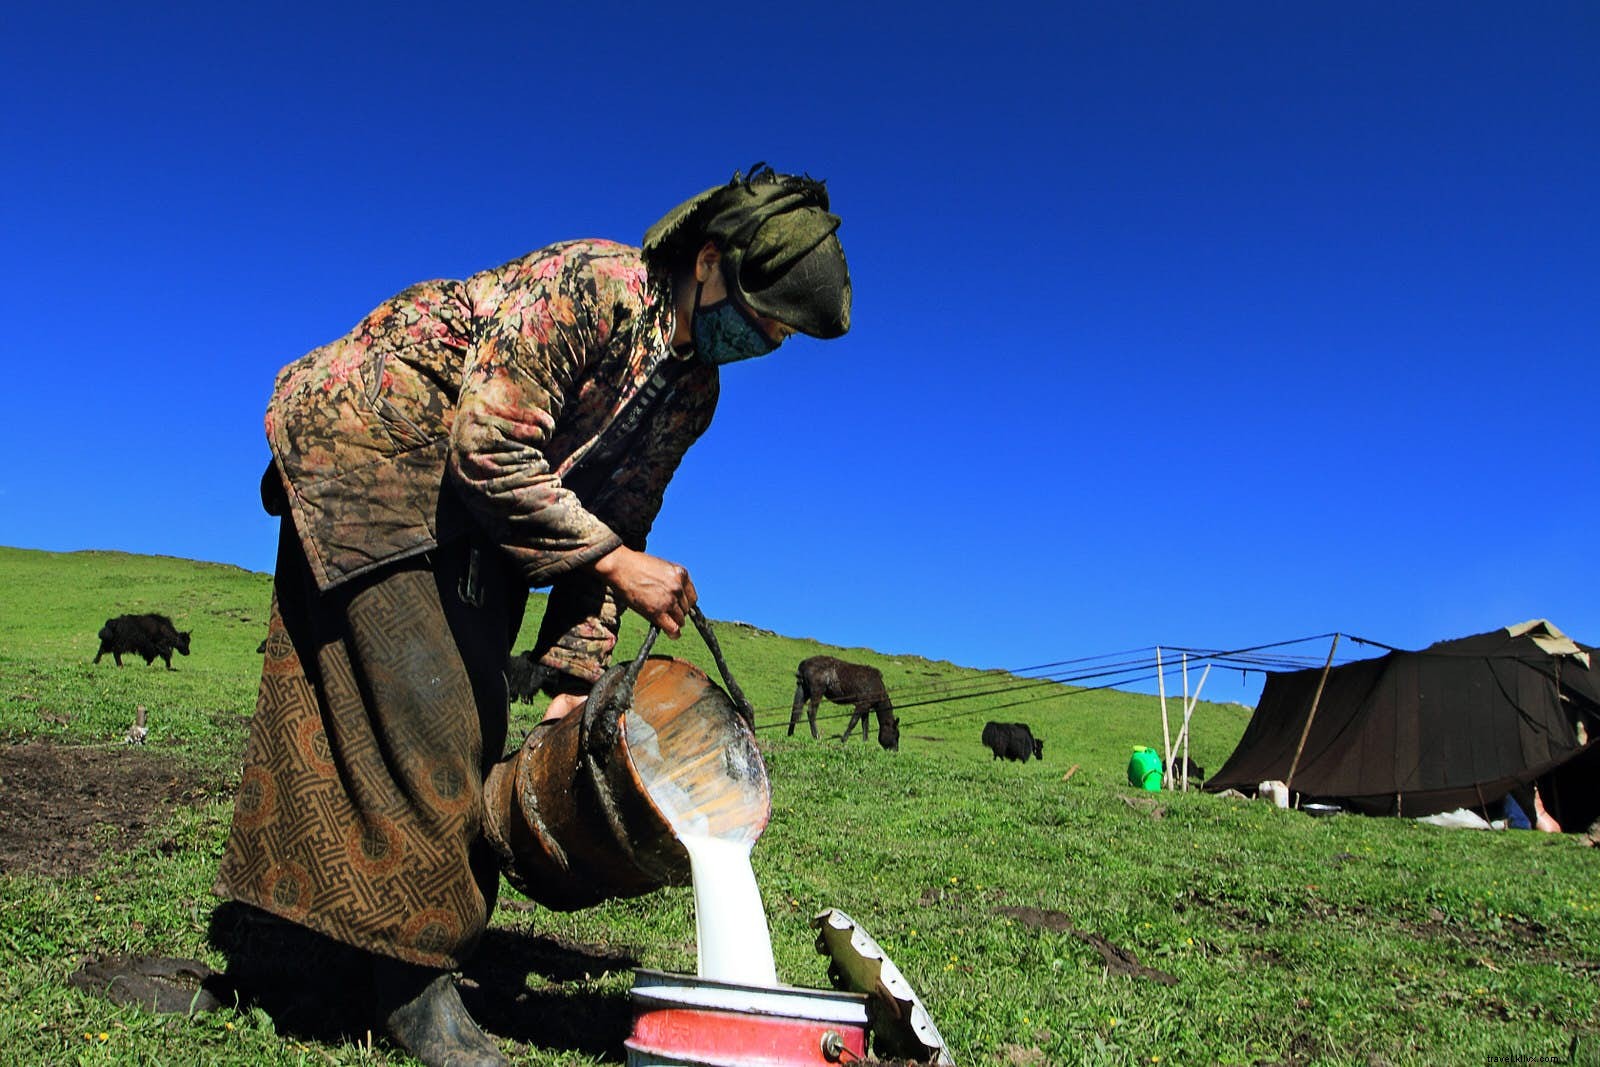 Dormir sob o cabelo de iaque:a vida com os nômades tibetanos de Gansu 